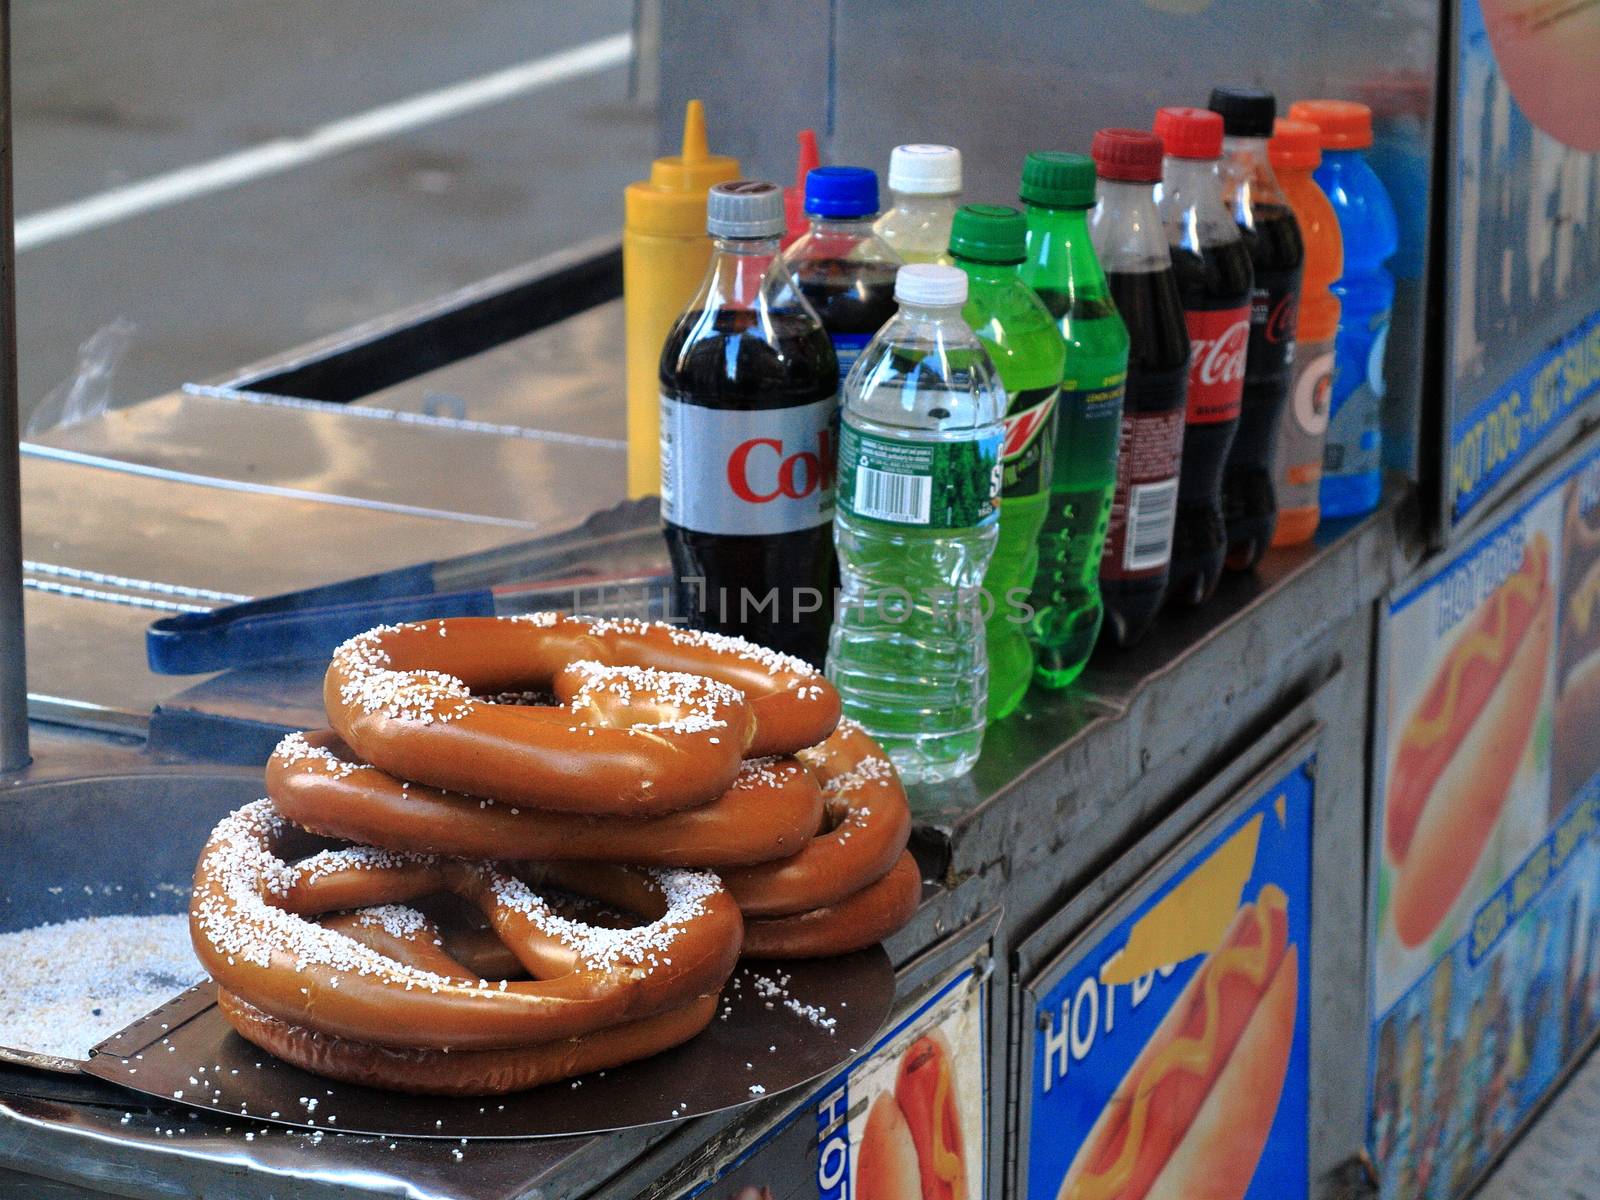 A Manhattan hot dog stand featuring salty pretzels.